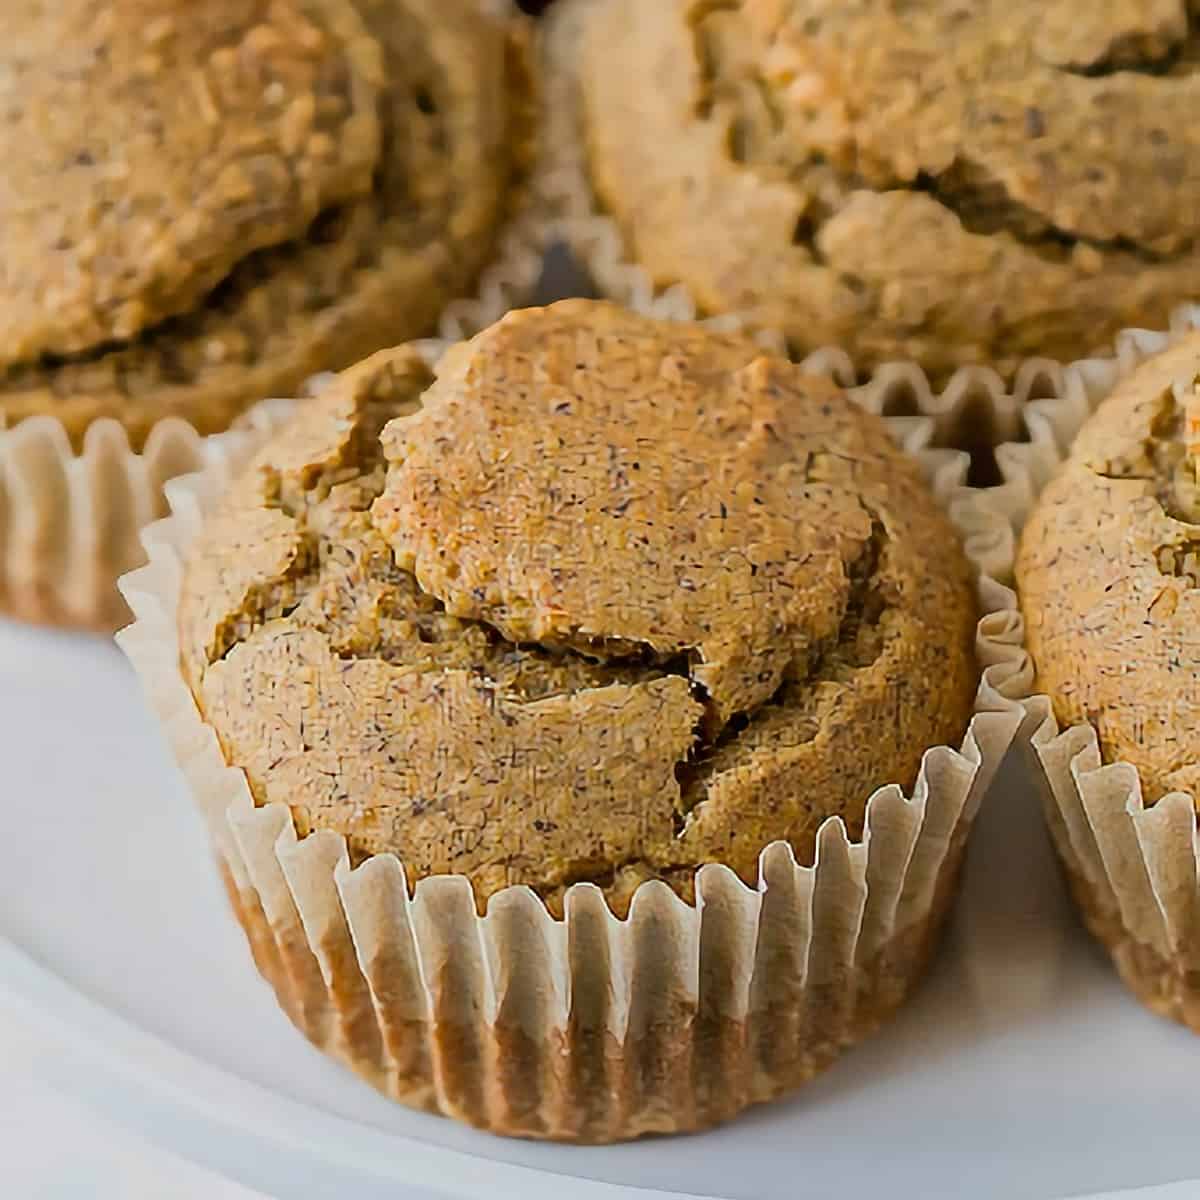 Vegan Muffin Recipe